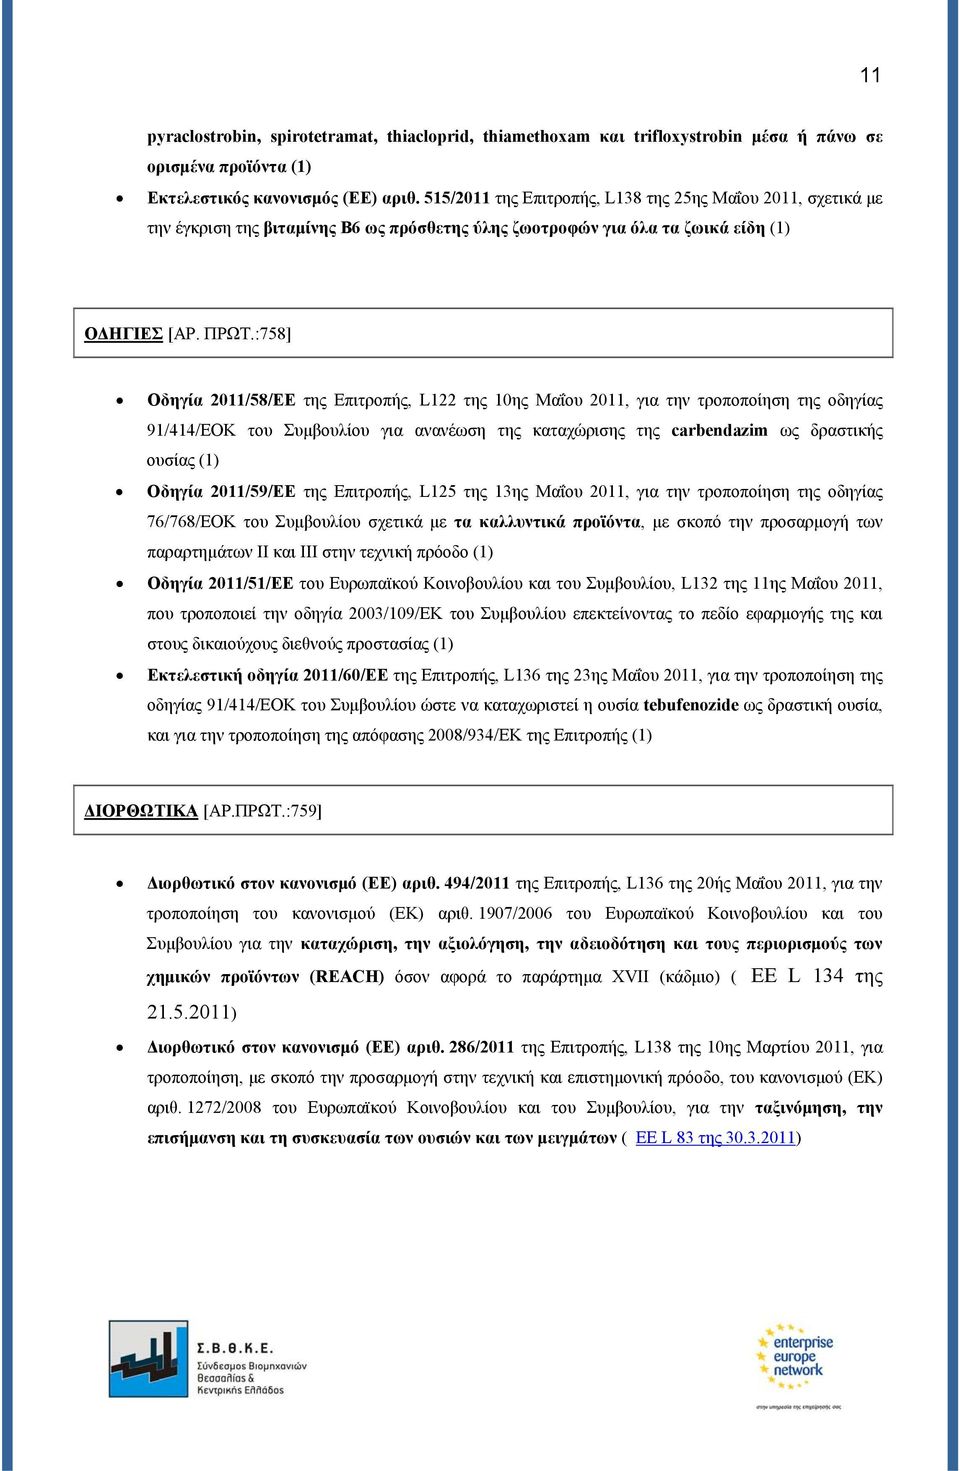 :758] Οδηγία 2011/58/ΕΕ της Επιτροπής, L122 της 10ης Μαΐου 2011, για την τροποποίηση της οδηγίας 91/414/ΕΟΚ του Συμβουλίου για ανανέωση της καταχώρισης της carbendazim ως δραστικής ουσίας (1) Οδηγία